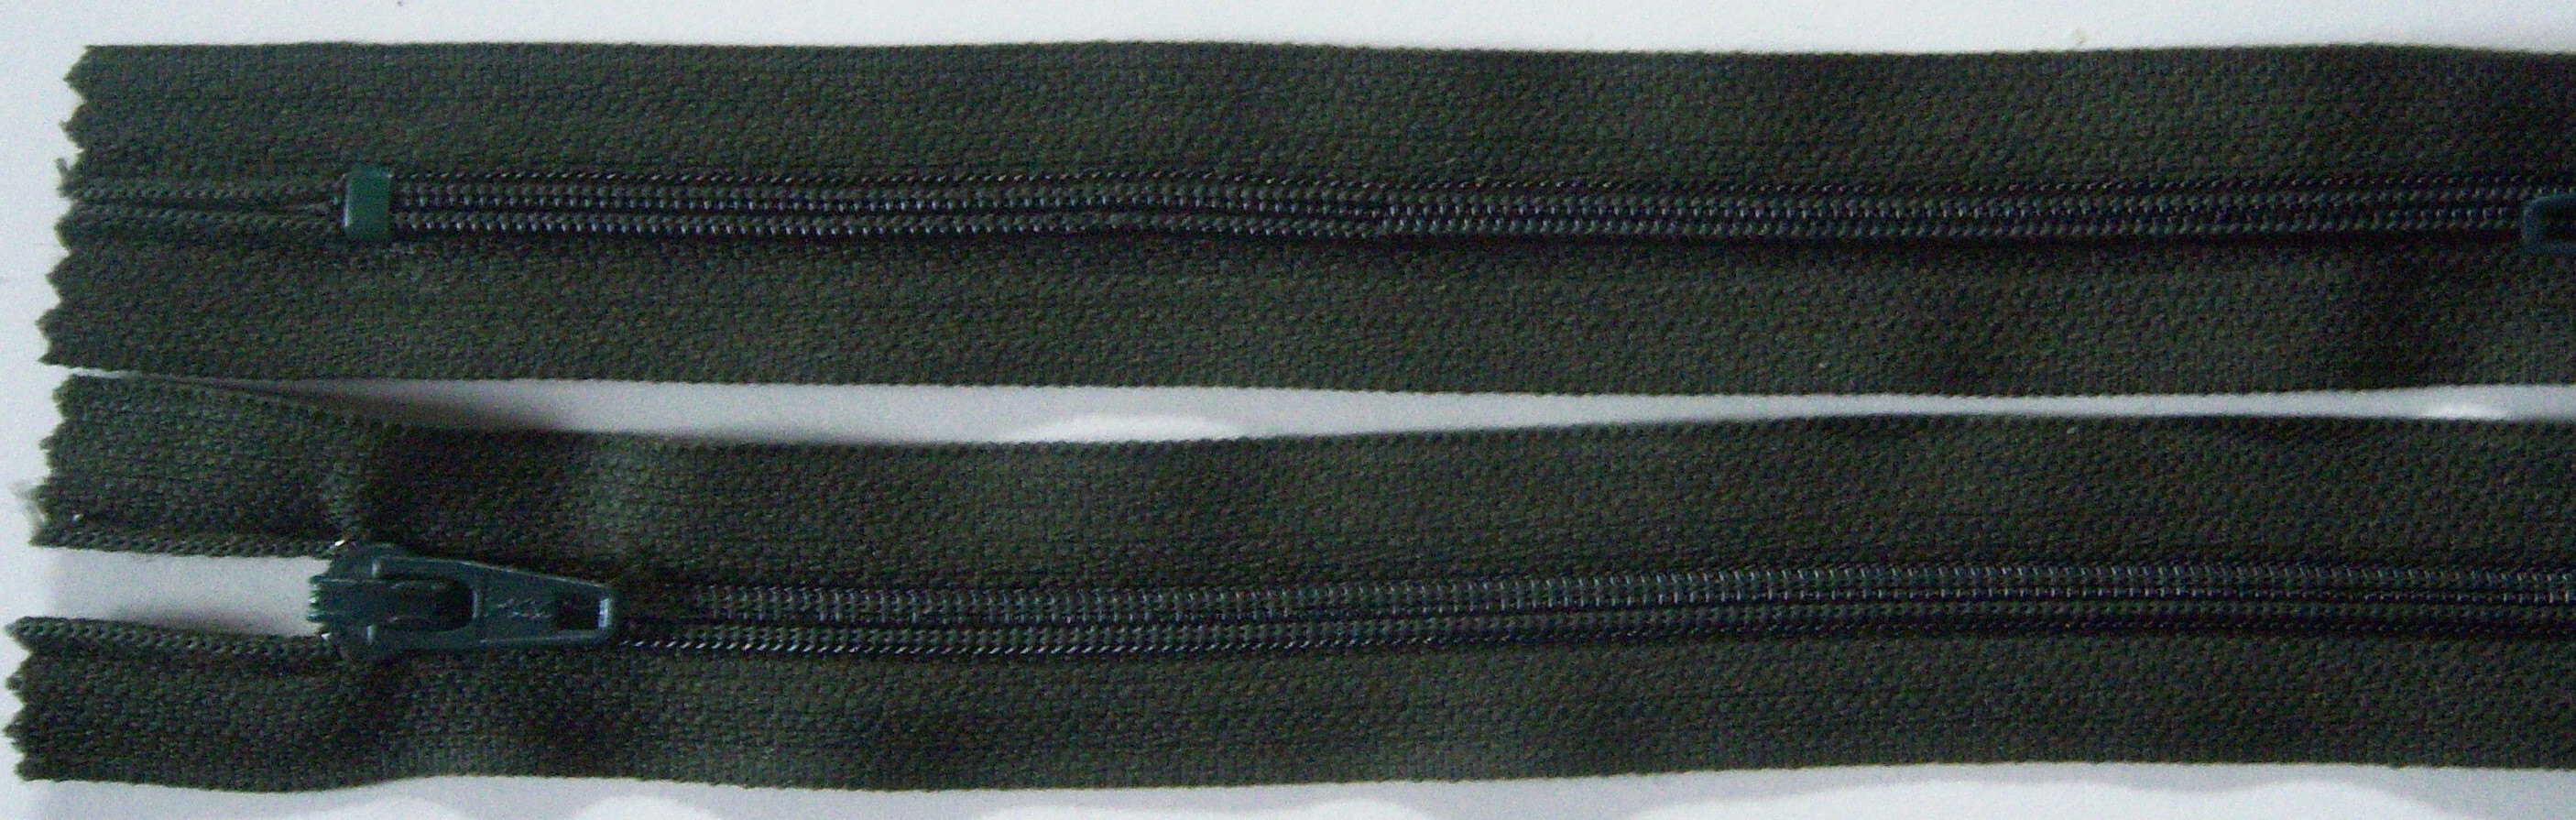 Cavern Green YKK 6.5" Nylon Coil Zipper